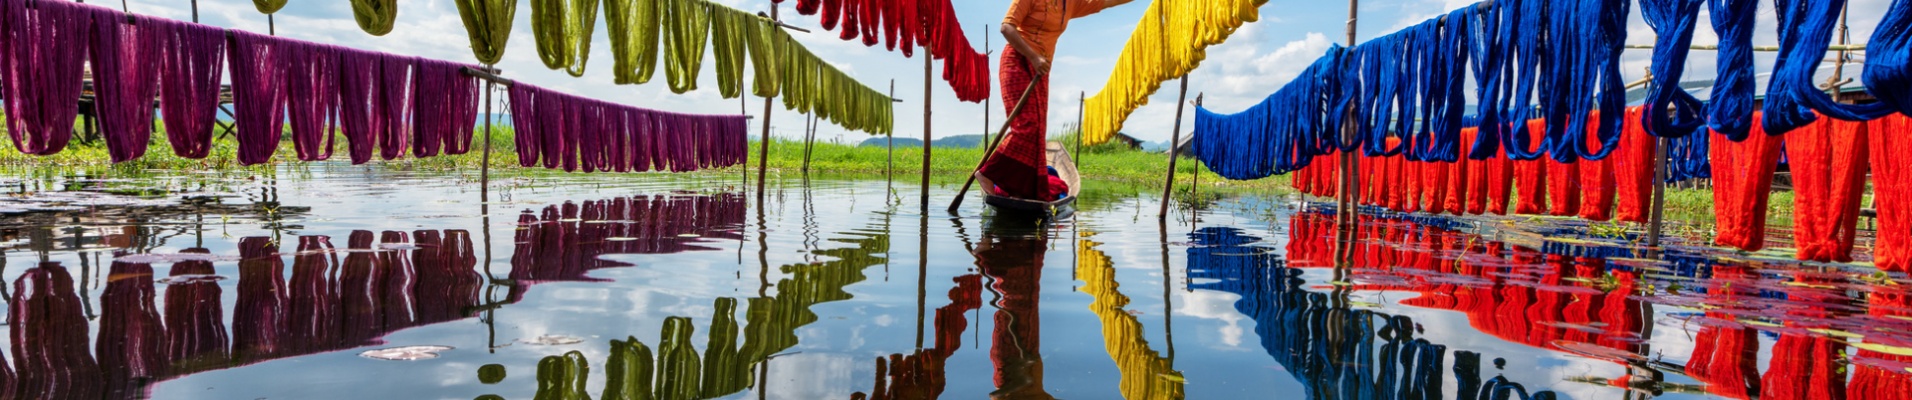 Lac Inle, état de Shan, Myanmar